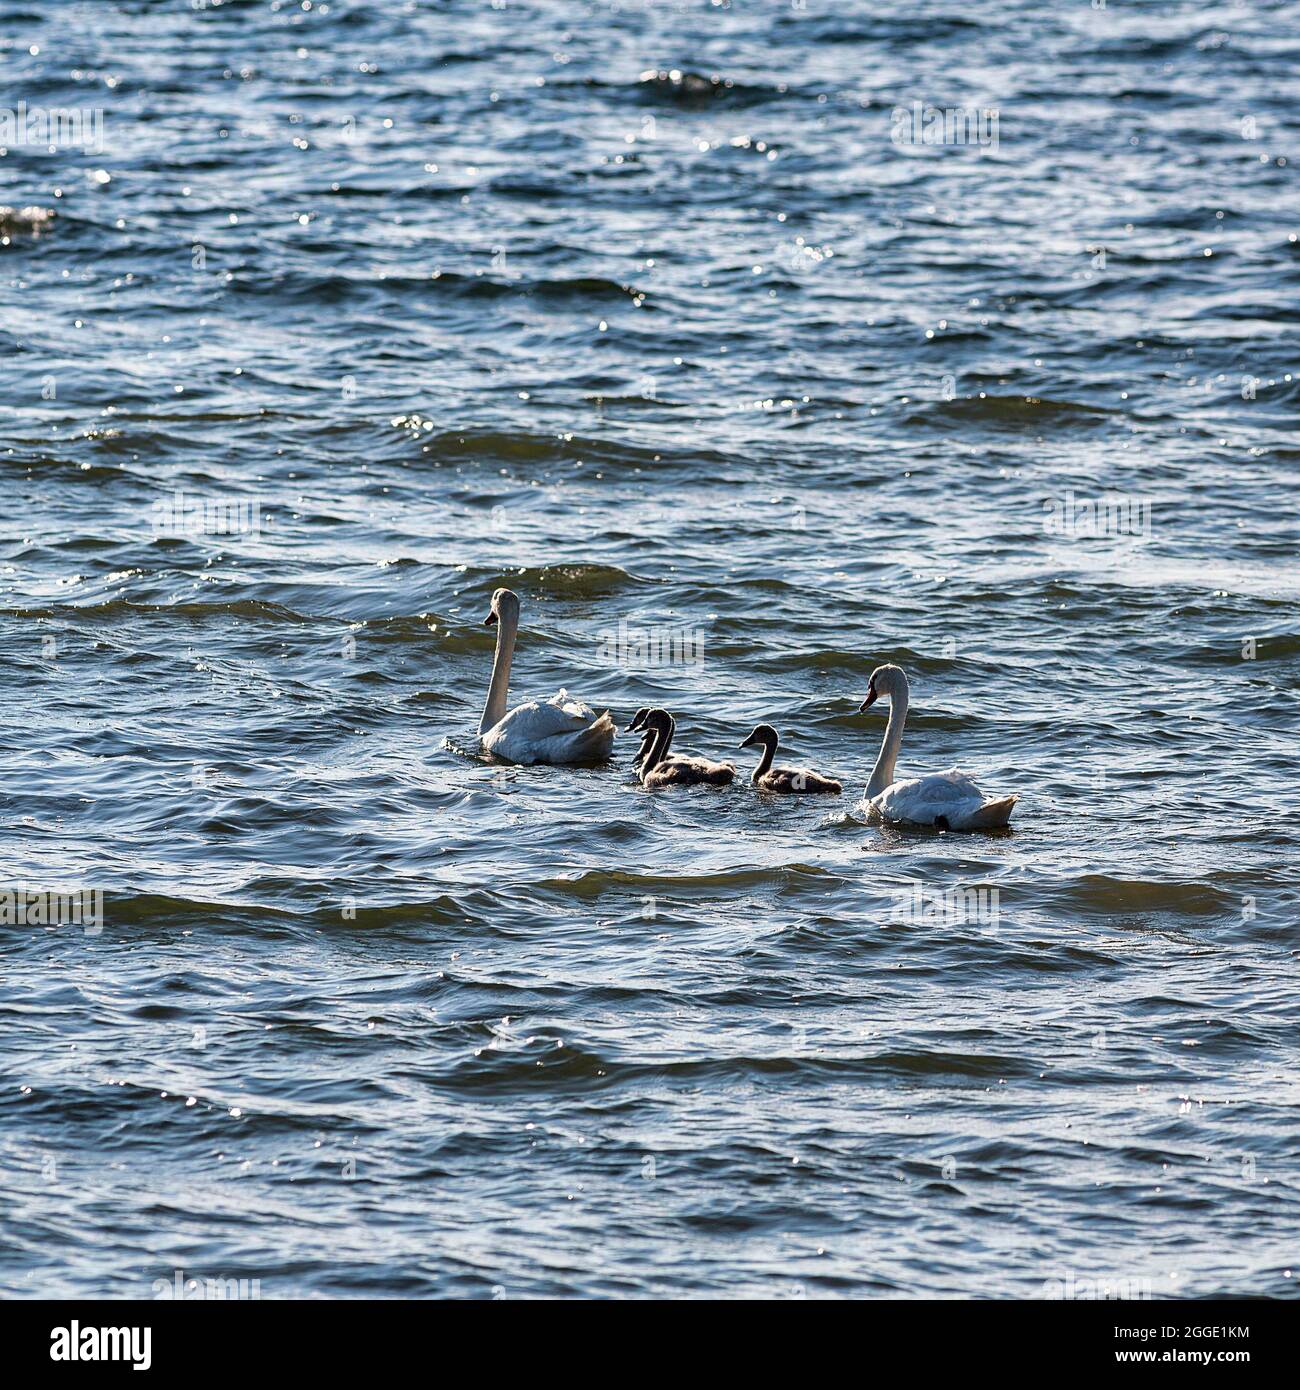 Deux cygnes muets (Cygnus olor) avec de jeunes oiseaux, famille cygne nageant dans la mer Baltique, île Gotland, Suède Banque D'Images